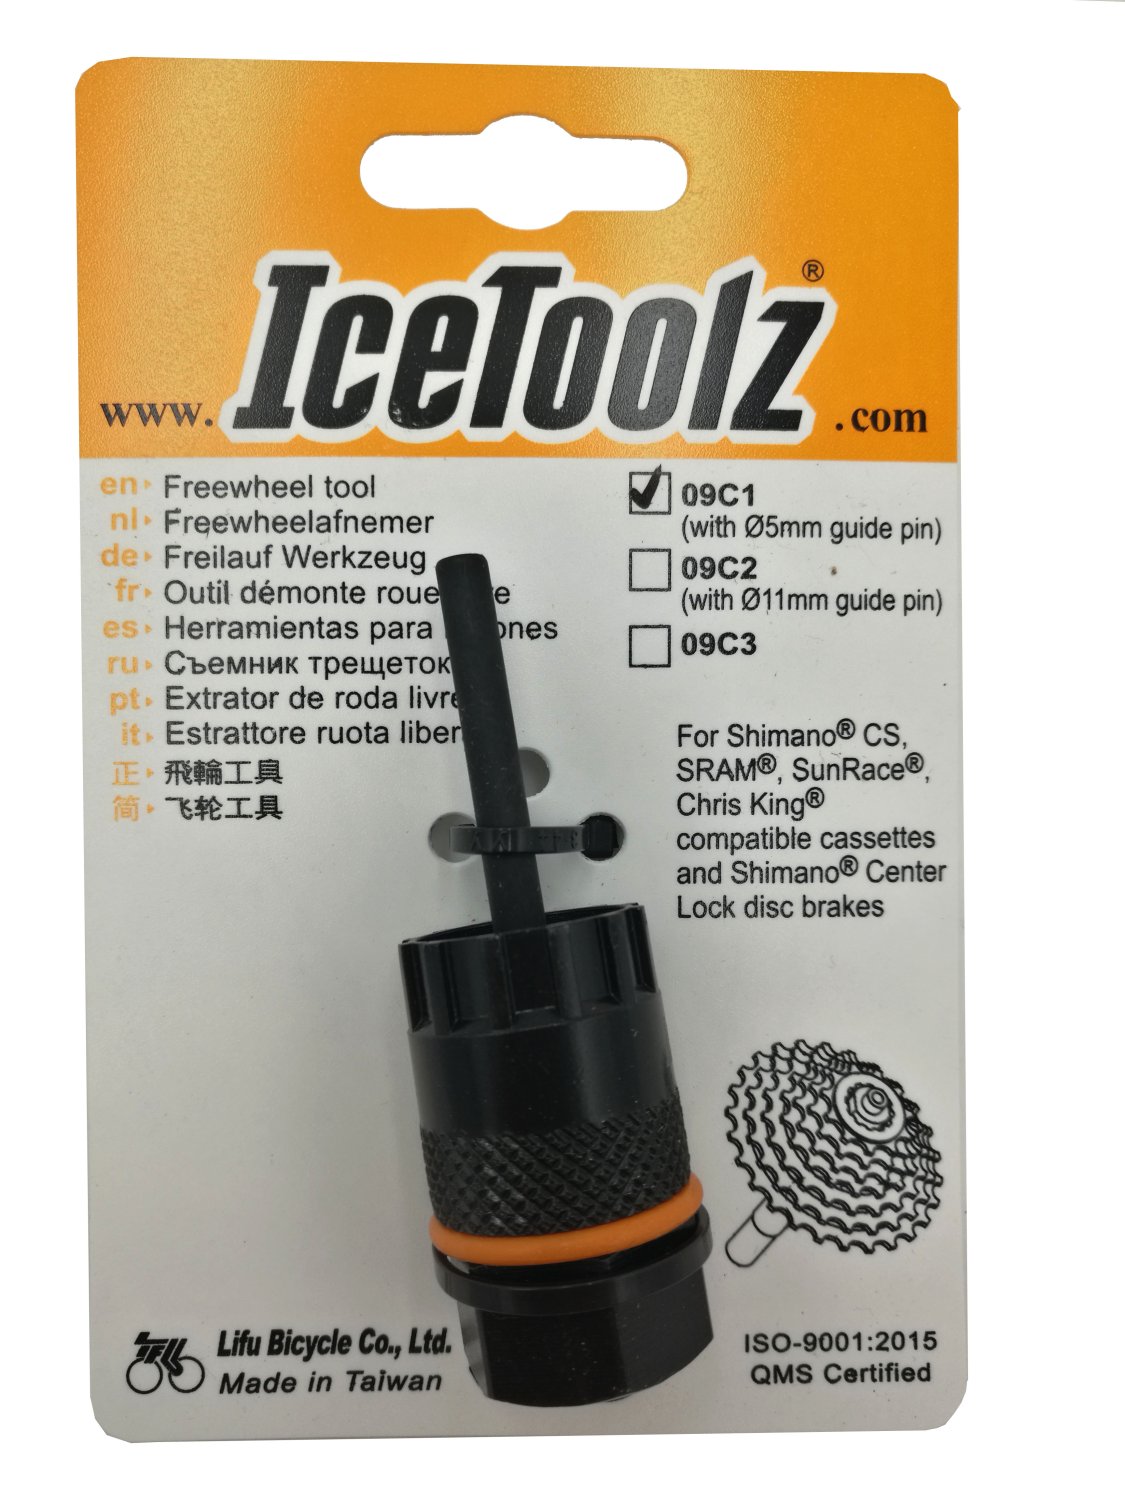 Съемник для кассет ICE TOOLZ Shimano CS/Center Lock, с направляющей , Сr-V сталь, 09C1 съемник shimano для кассет и трещотокtl fw30 y12009050